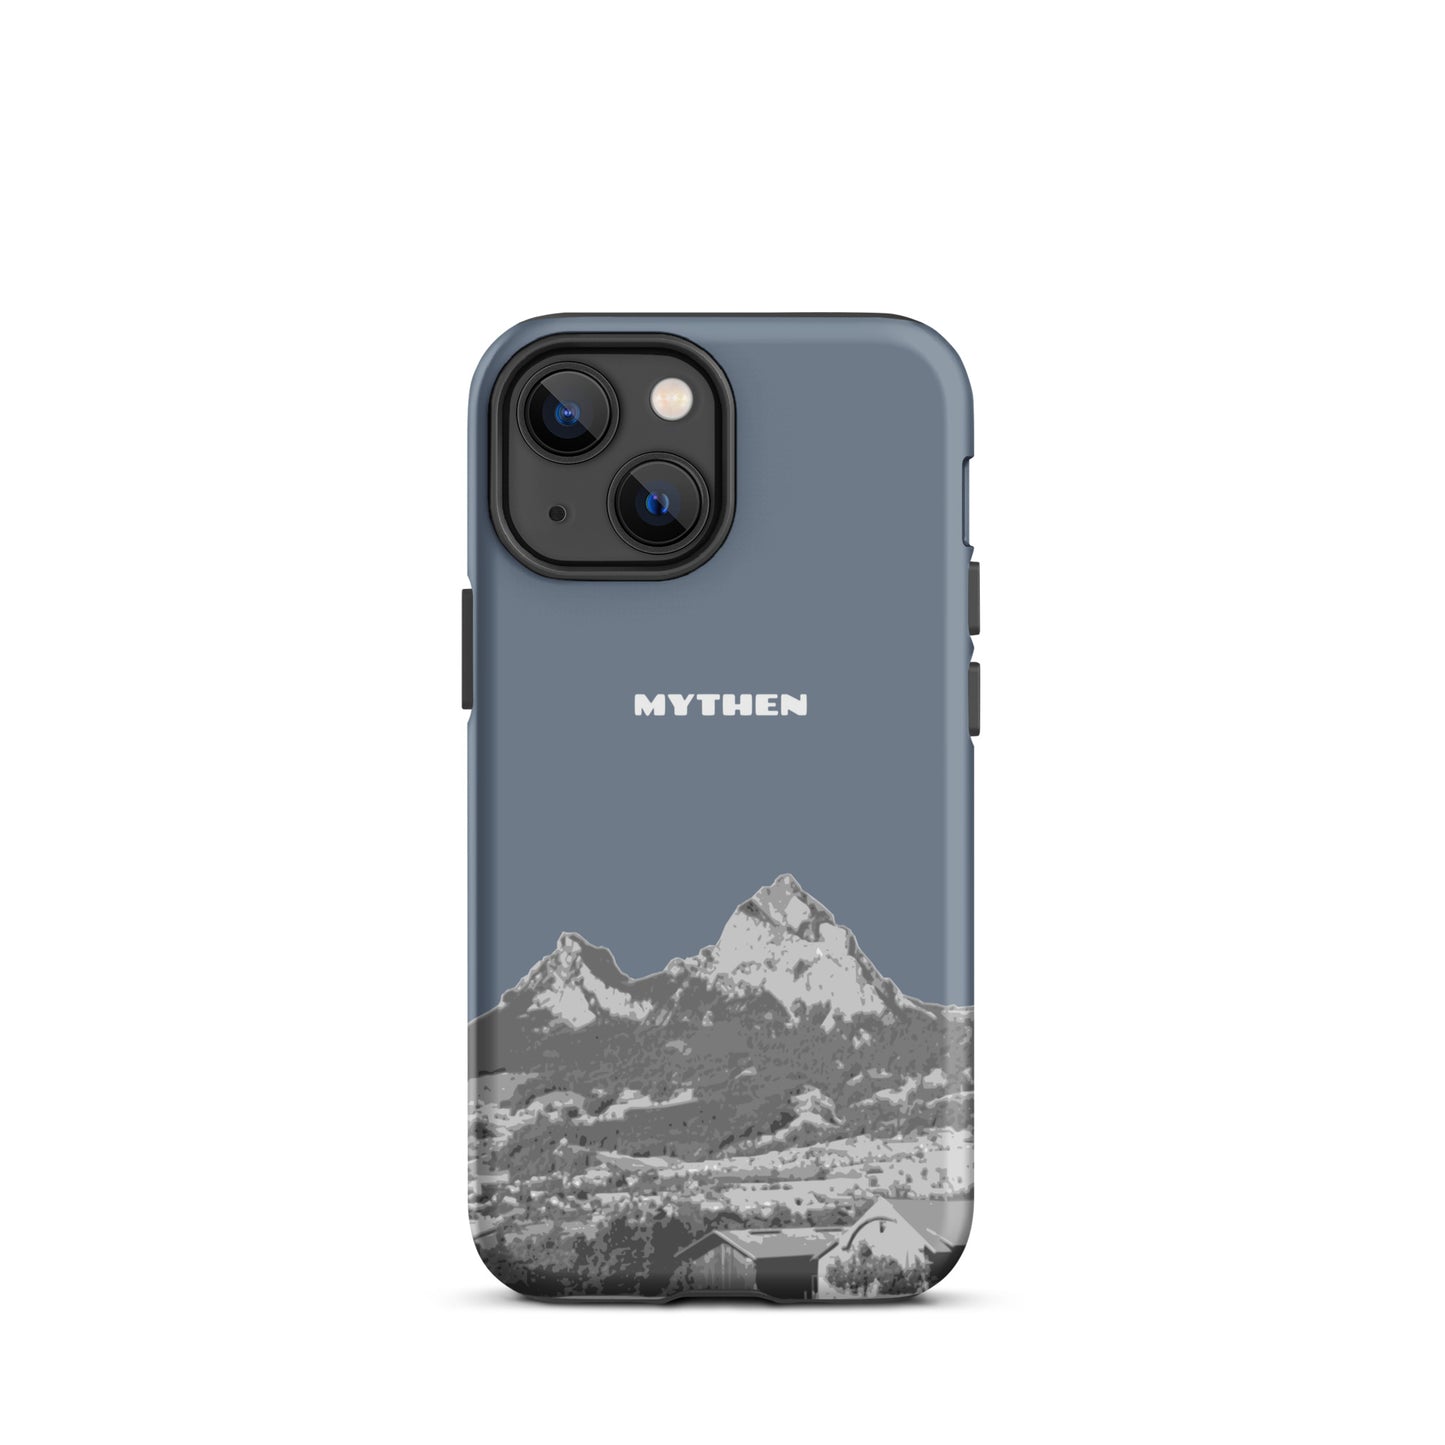 Hülle für das iPhone 13 mini von Apple in der Farbe Schiefergrau, die den Grossen Mythen und den Kleinen Mythen bei Schwyz zeigt. 